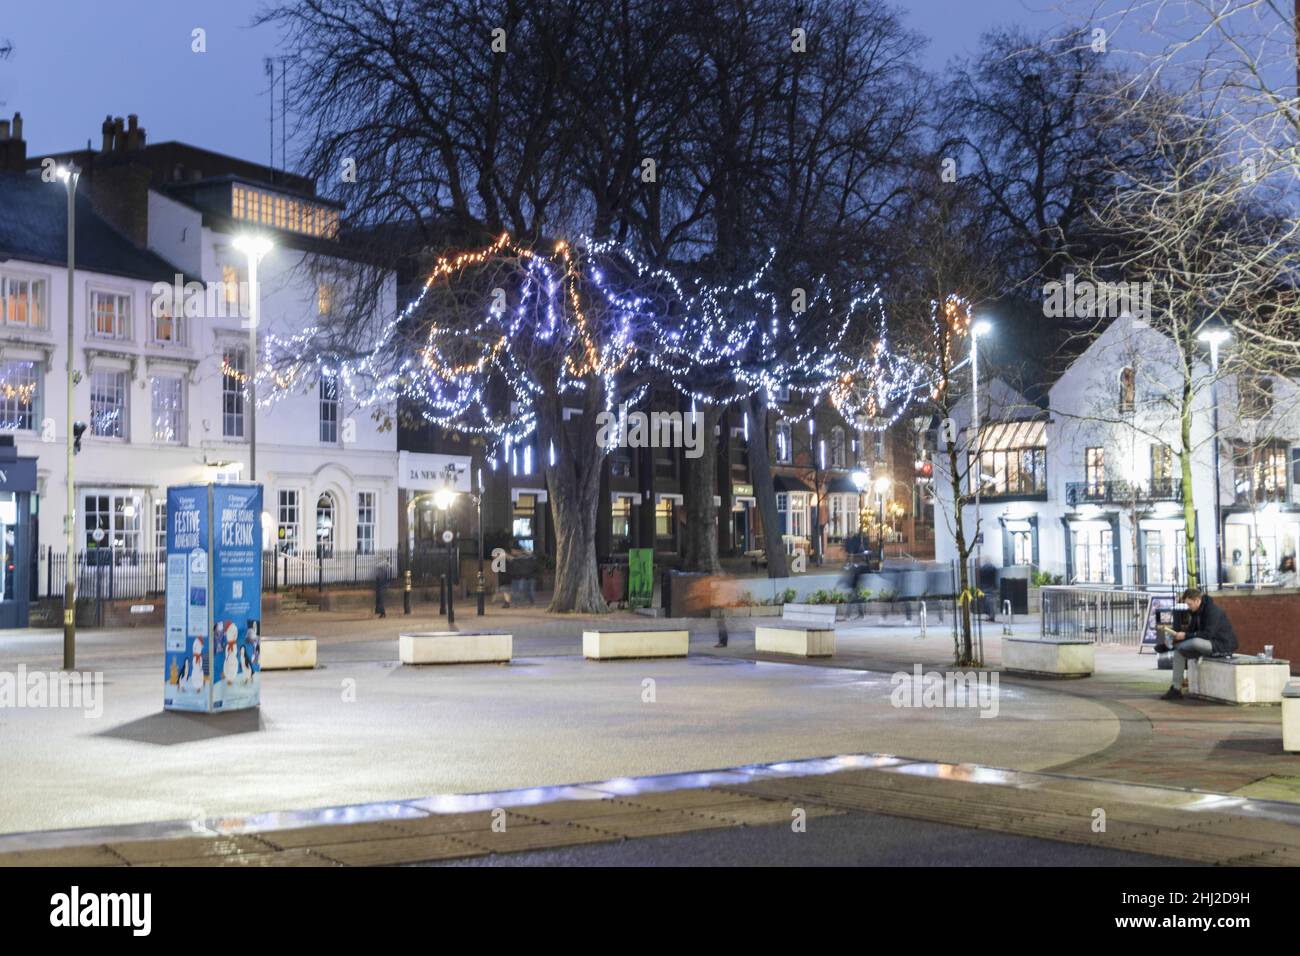 Nouvelle place de marche, montre une photo de nuit avec des lumières de Noël lumineuses, place ouverte avec des meubles de rue, des marches, et des bâtiments et des arbres en arrière-plan. Banque D'Images